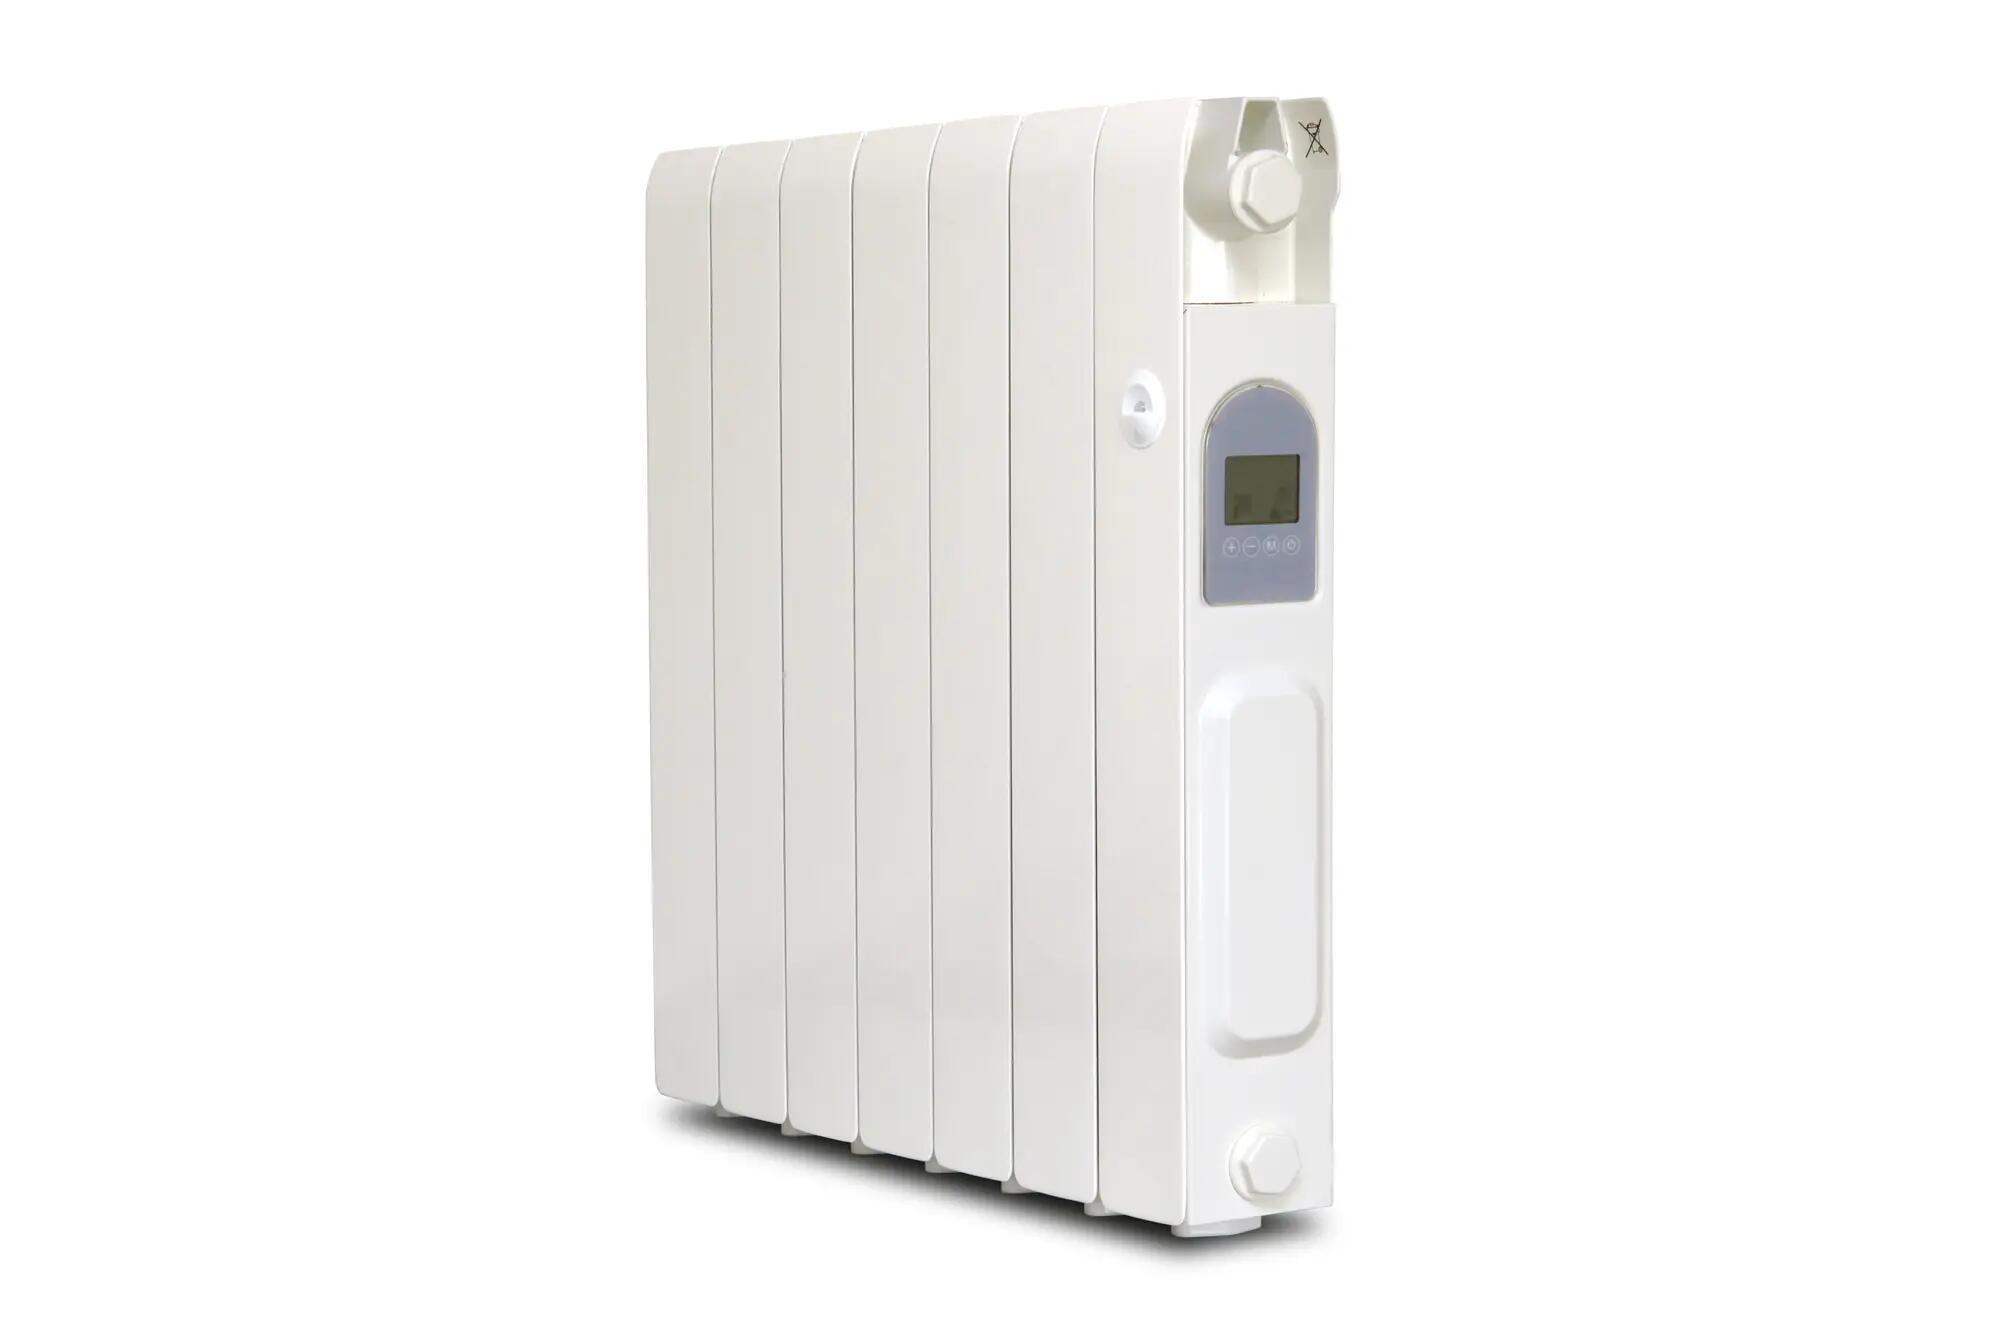 Radiateur électrique inertie sèche 1500W UNIV'R CHAUFFAGE Palayer vertical  blanc